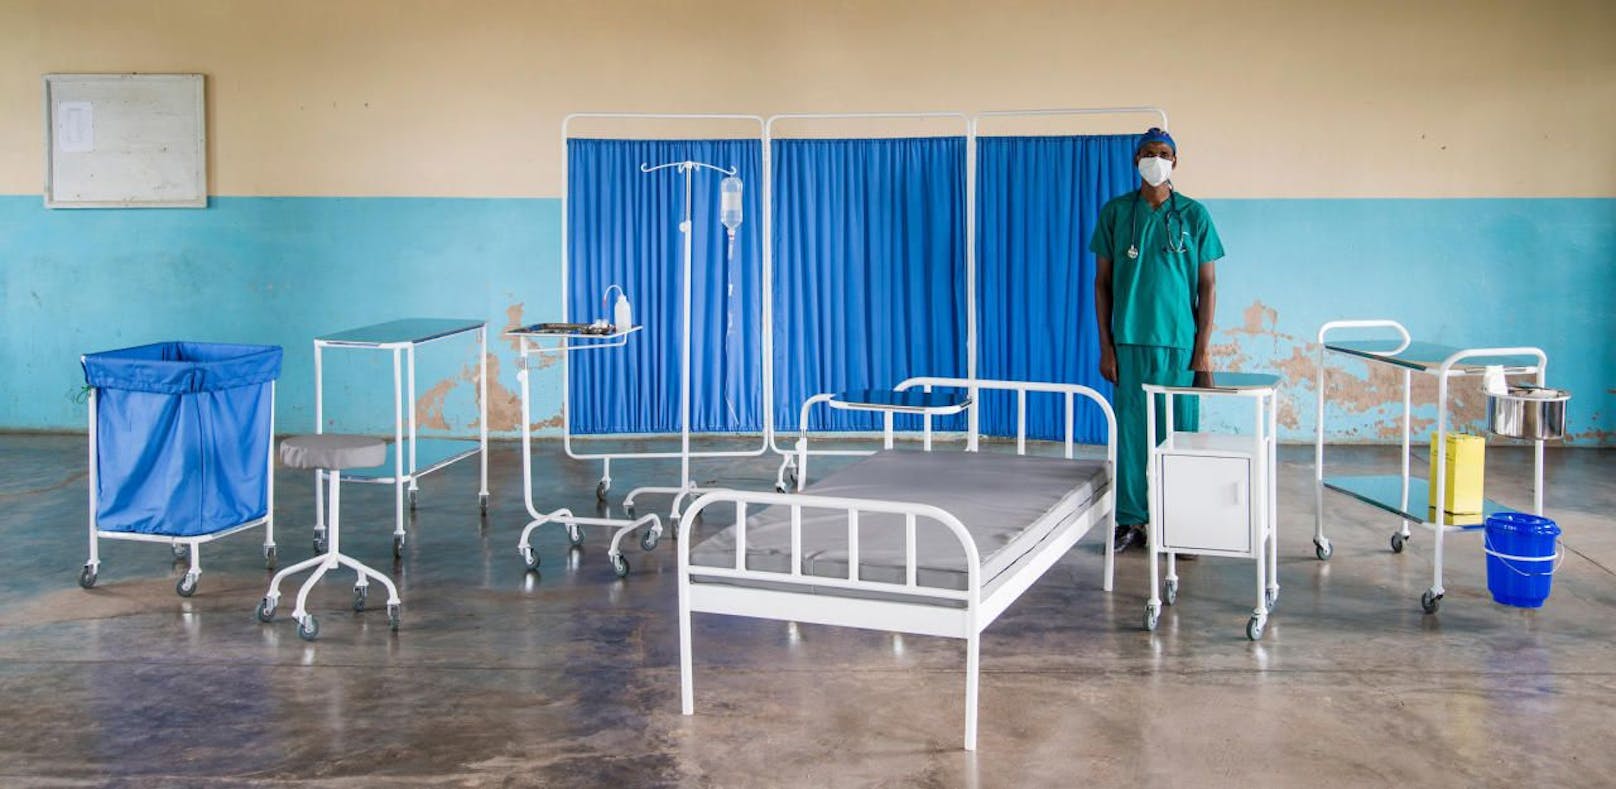 Design-Ausstattung für Malawis Krankenhäuser